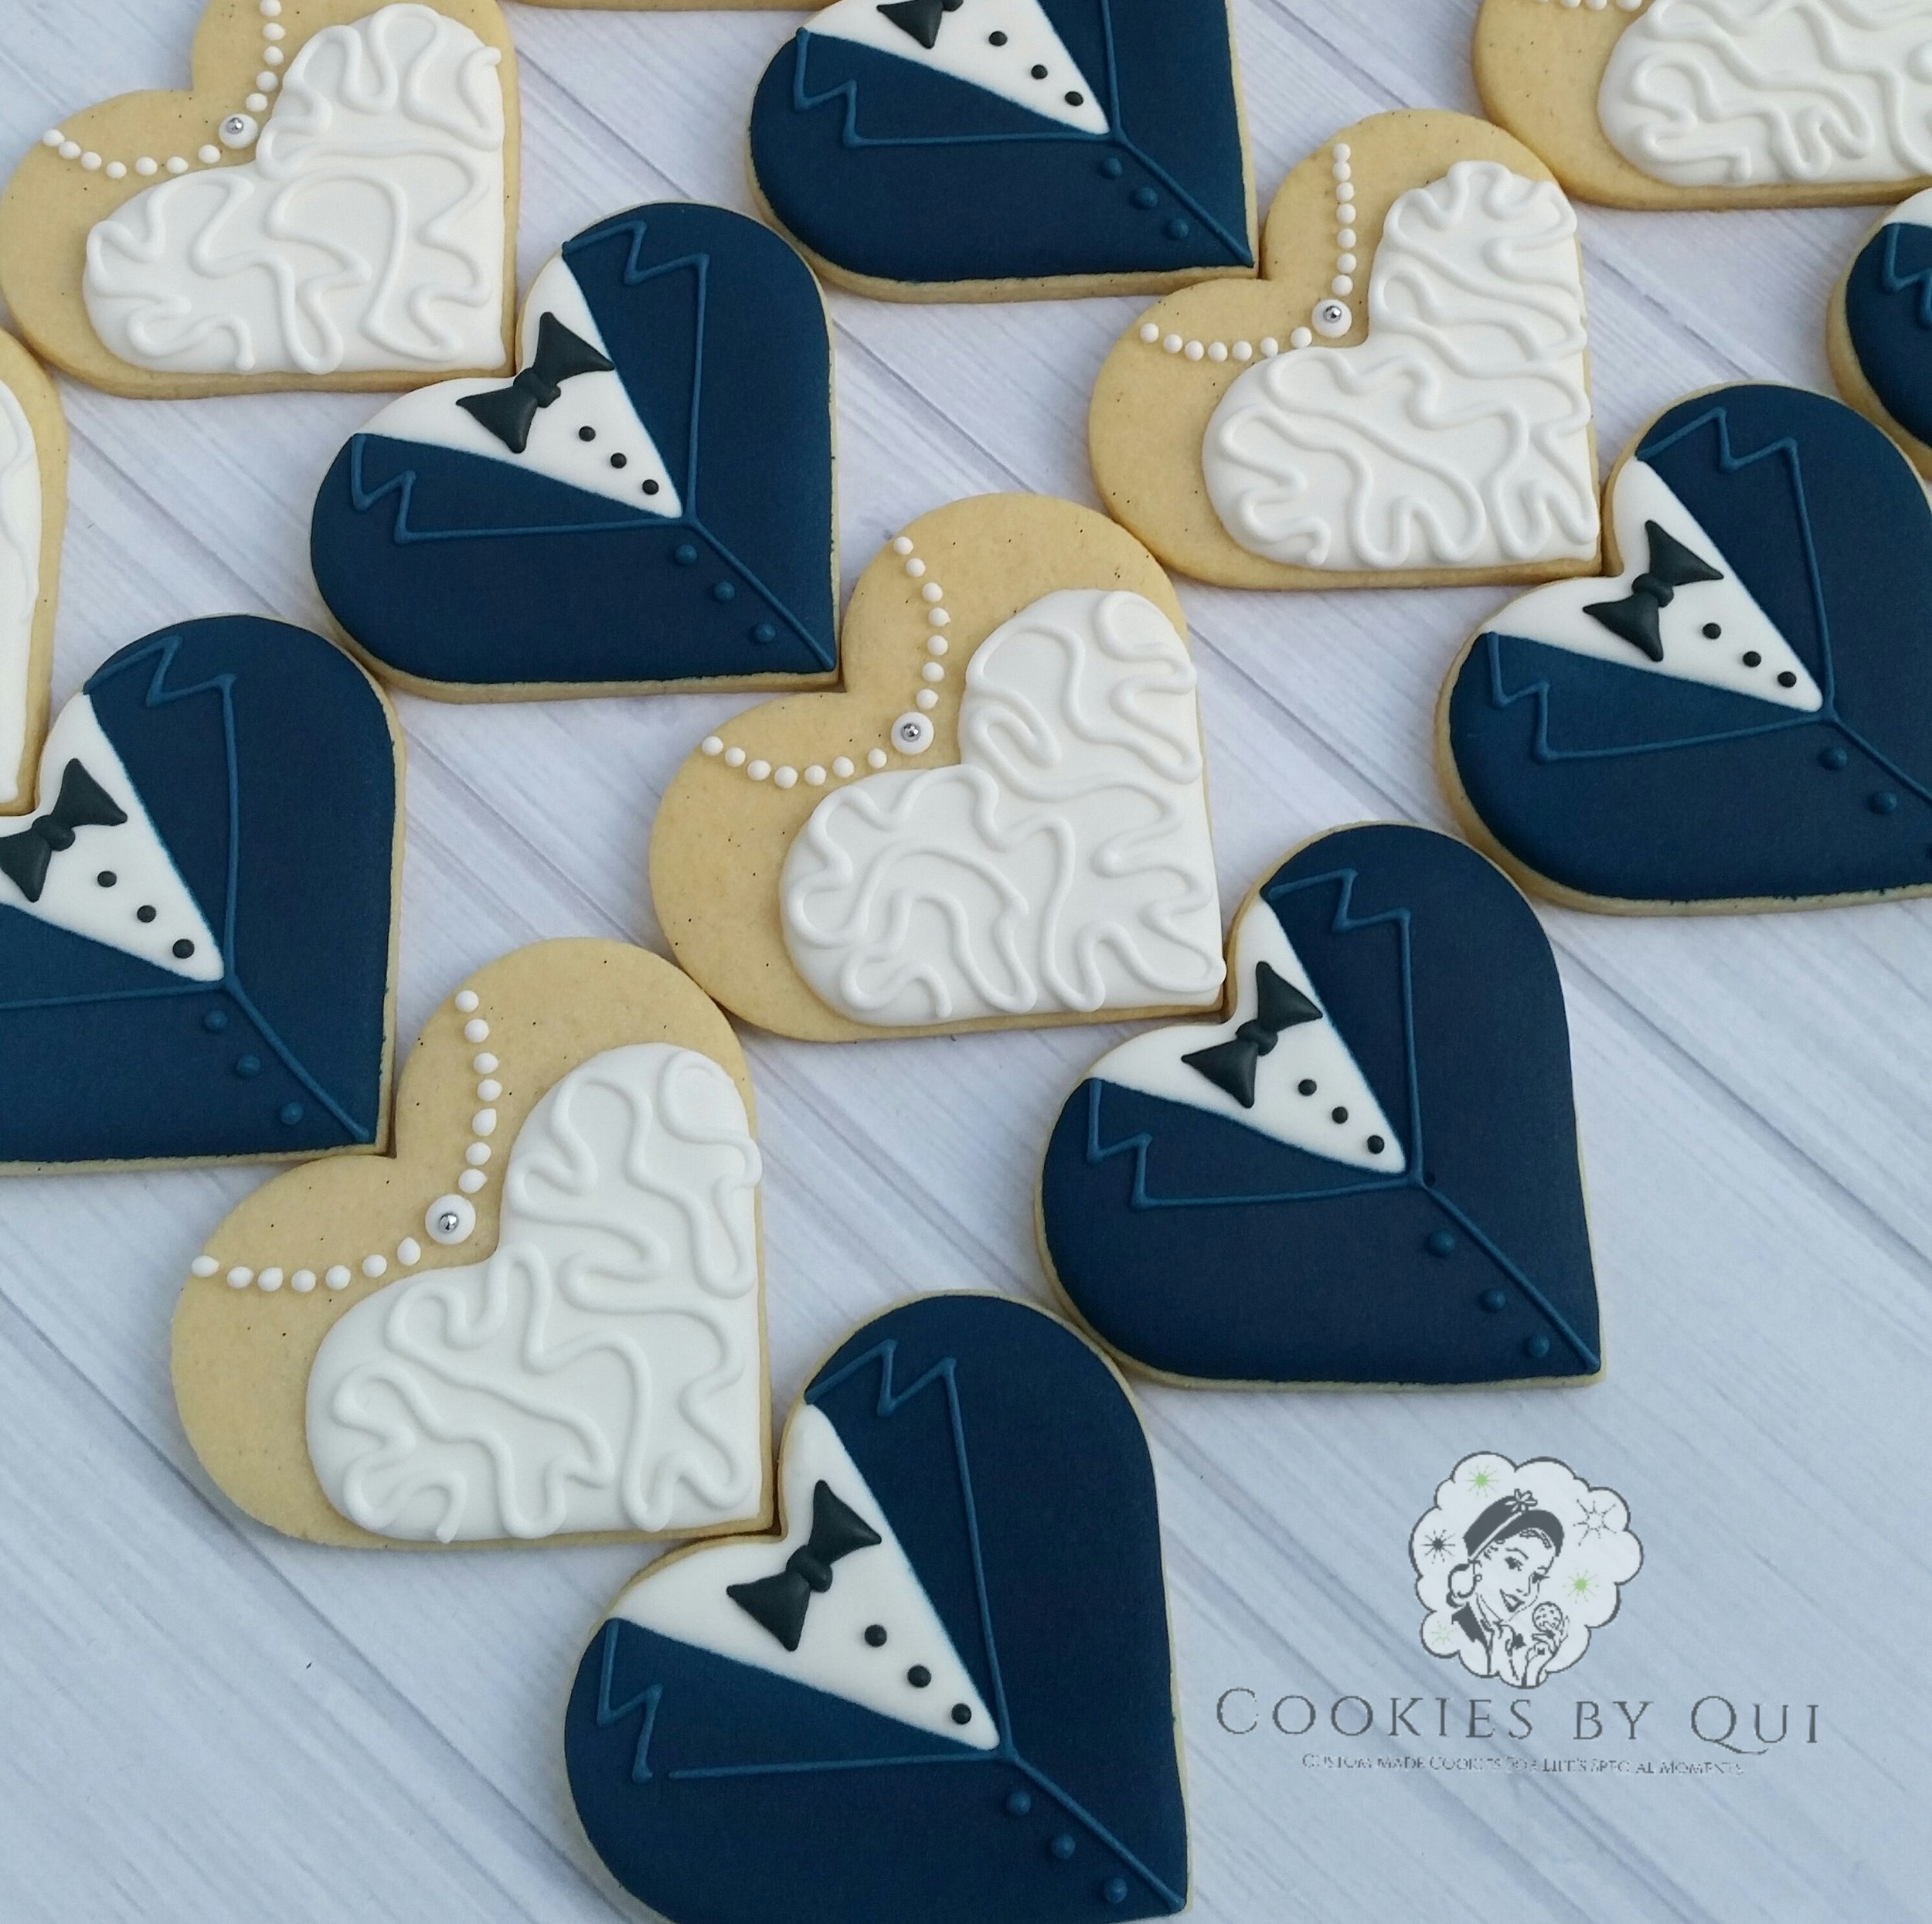 Classic Bride and Navy Groom Engagement Wedding Cookies - Cookies by Qui Geelong.jpg